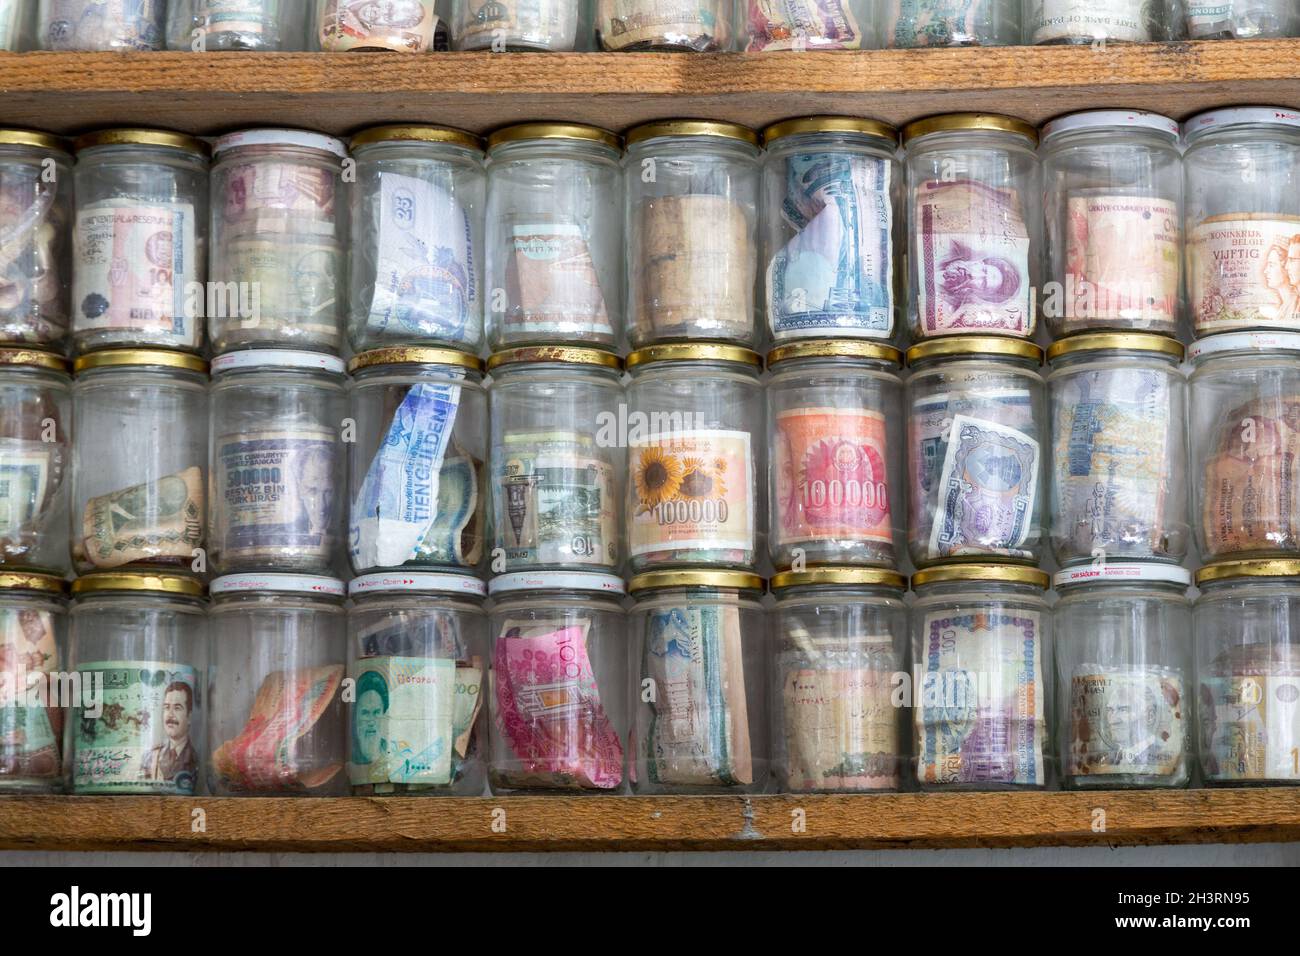 Valute mondiali attualmente in uso o obsolete. Banconote poste in vasetti di vetro. Numismatica è la raccolta di monete o banconote. Foto Stock